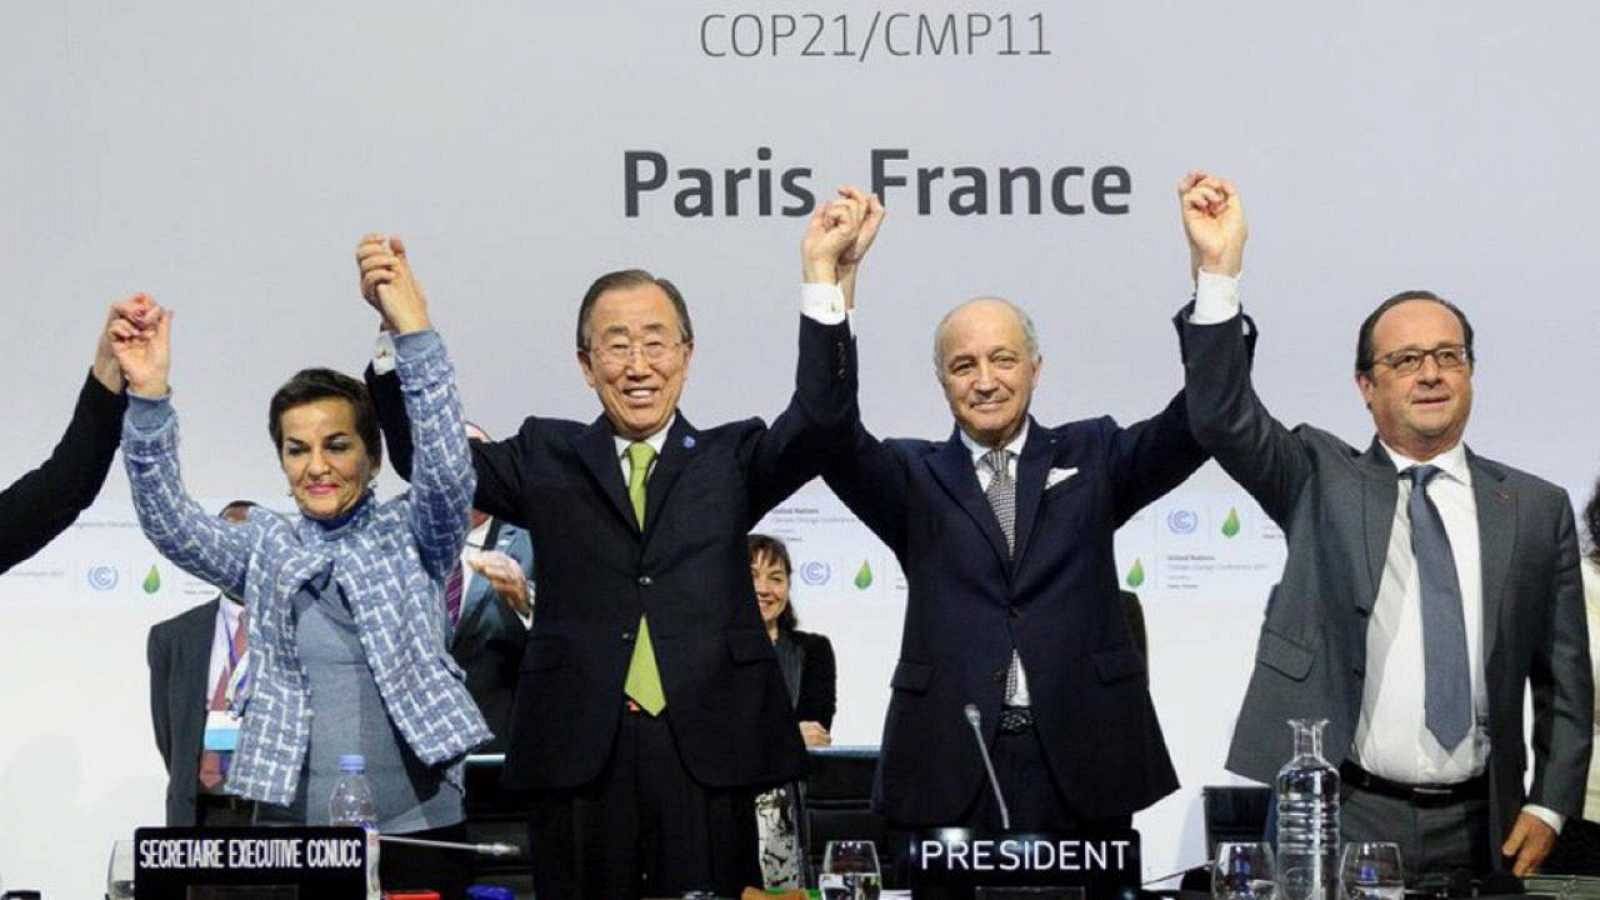 Els Acords de París (2015) van suposar un punt d'inflexió en la lluita contra el canvi climàtic